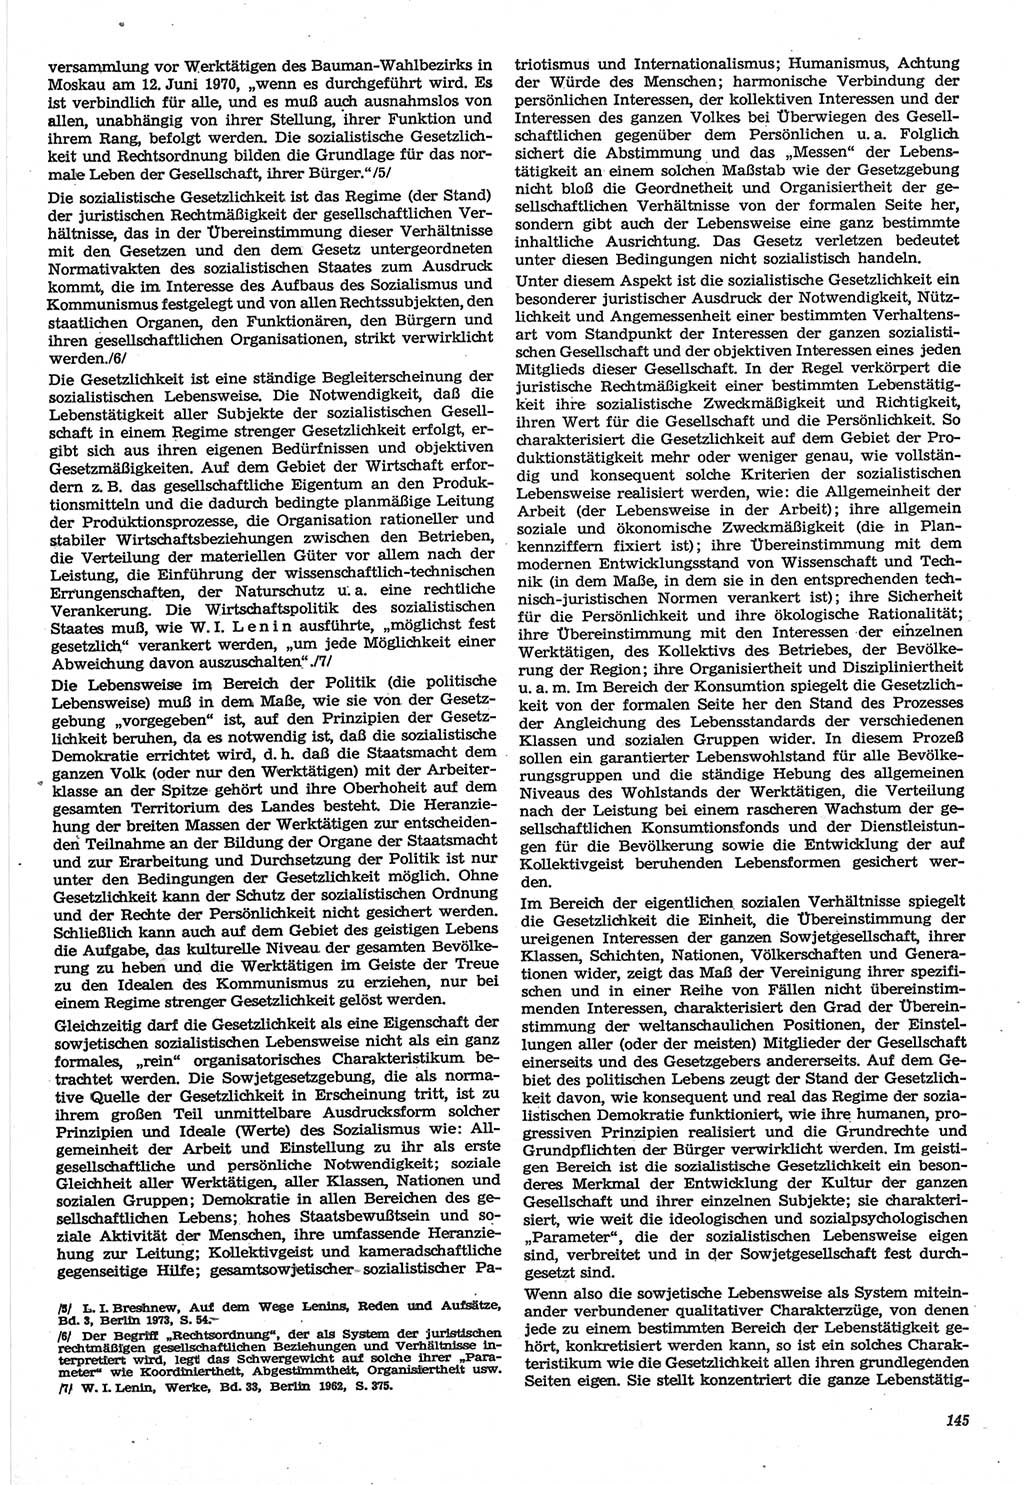 Neue Justiz (NJ), Zeitschrift für Recht und Rechtswissenschaft-Zeitschrift, sozialistisches Recht und Gesetzlichkeit, 31. Jahrgang 1977, Seite 145 (NJ DDR 1977, S. 145)